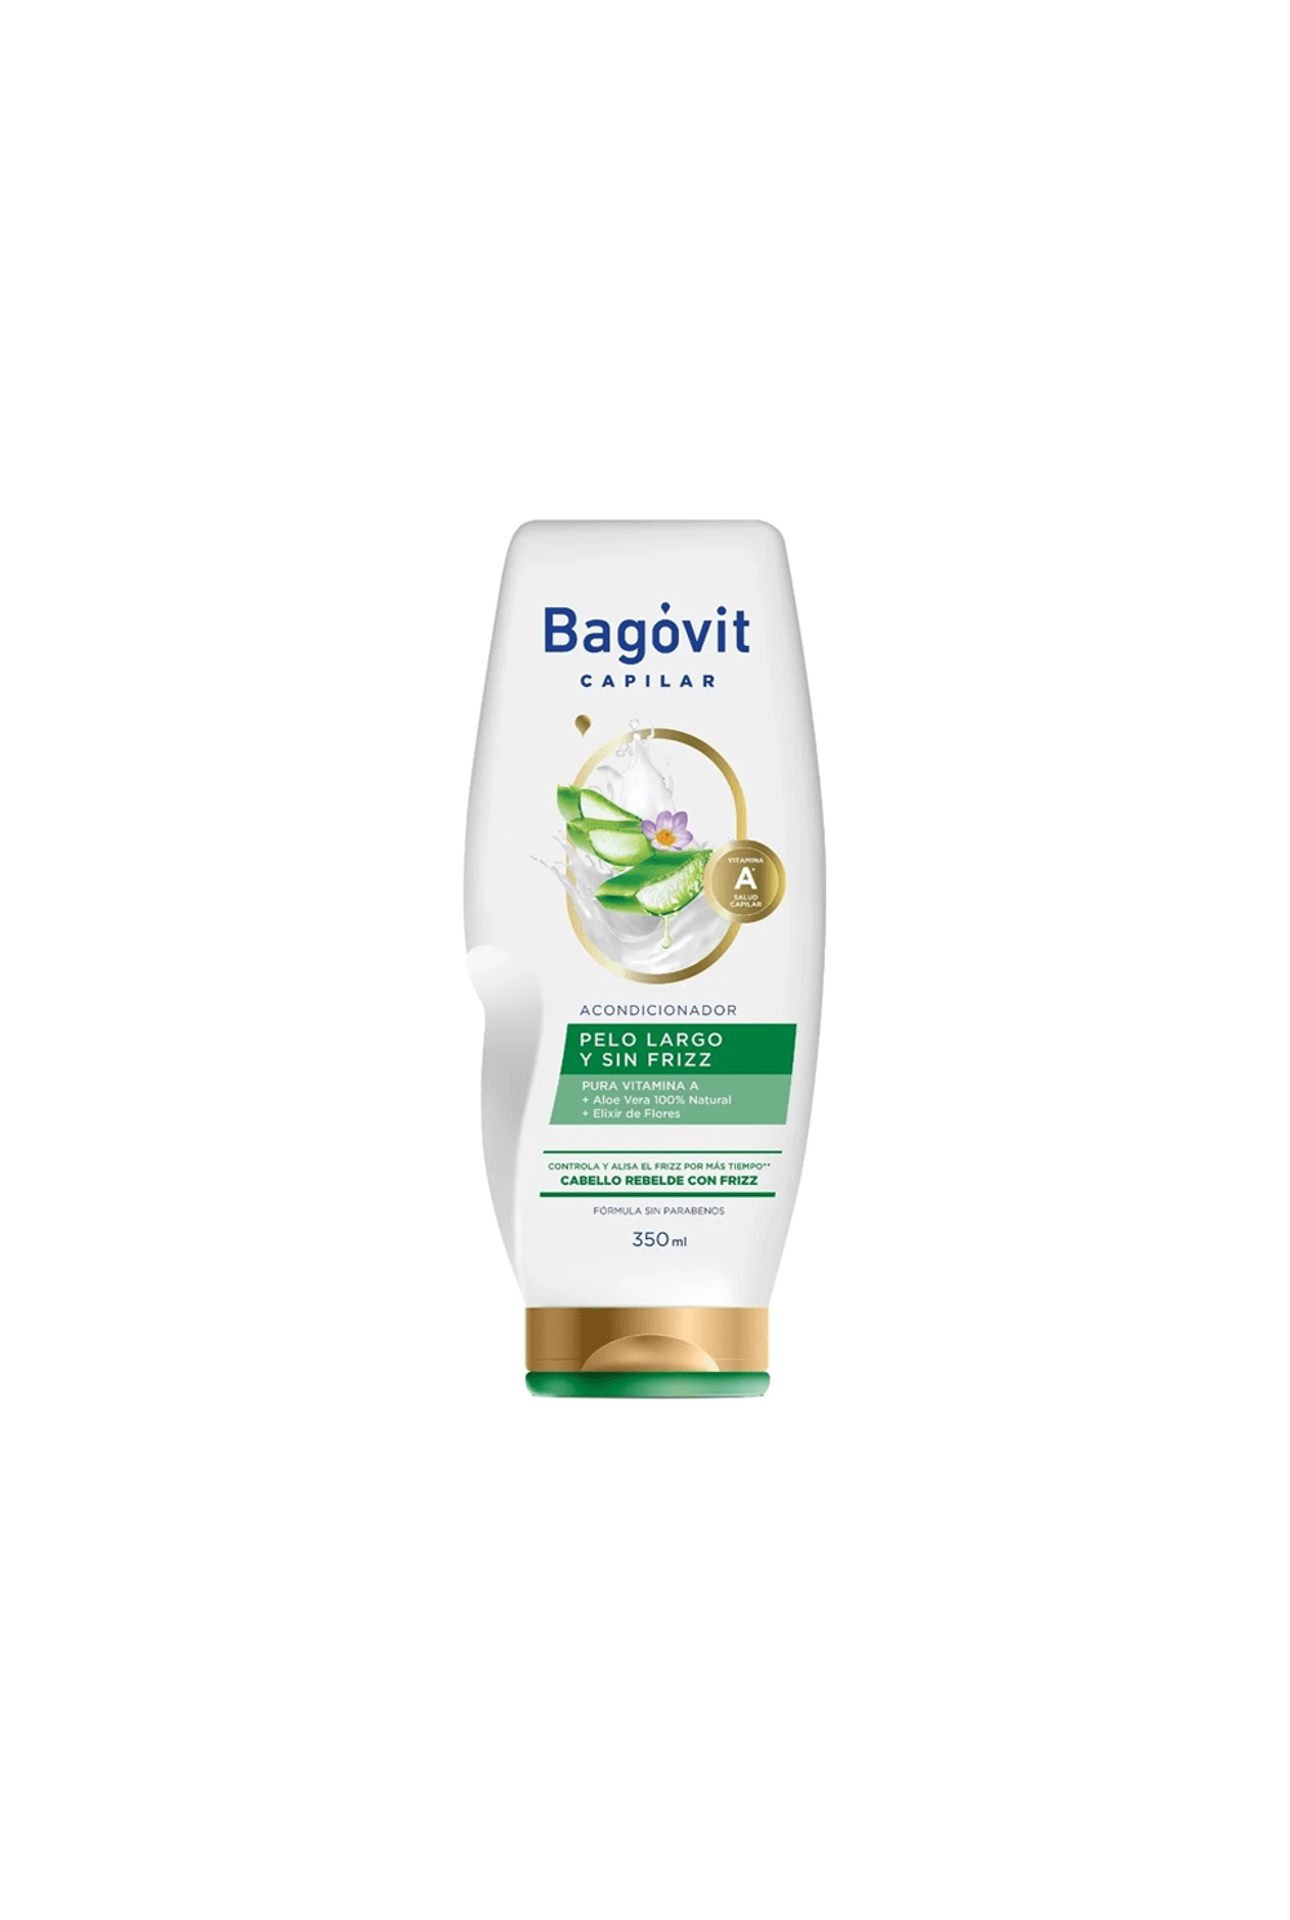 Bagovit-Acondicionador-Bagovit-capilar-Pelo-Largo-y-Sin-Frizz-xc350m-7790375269746_img1